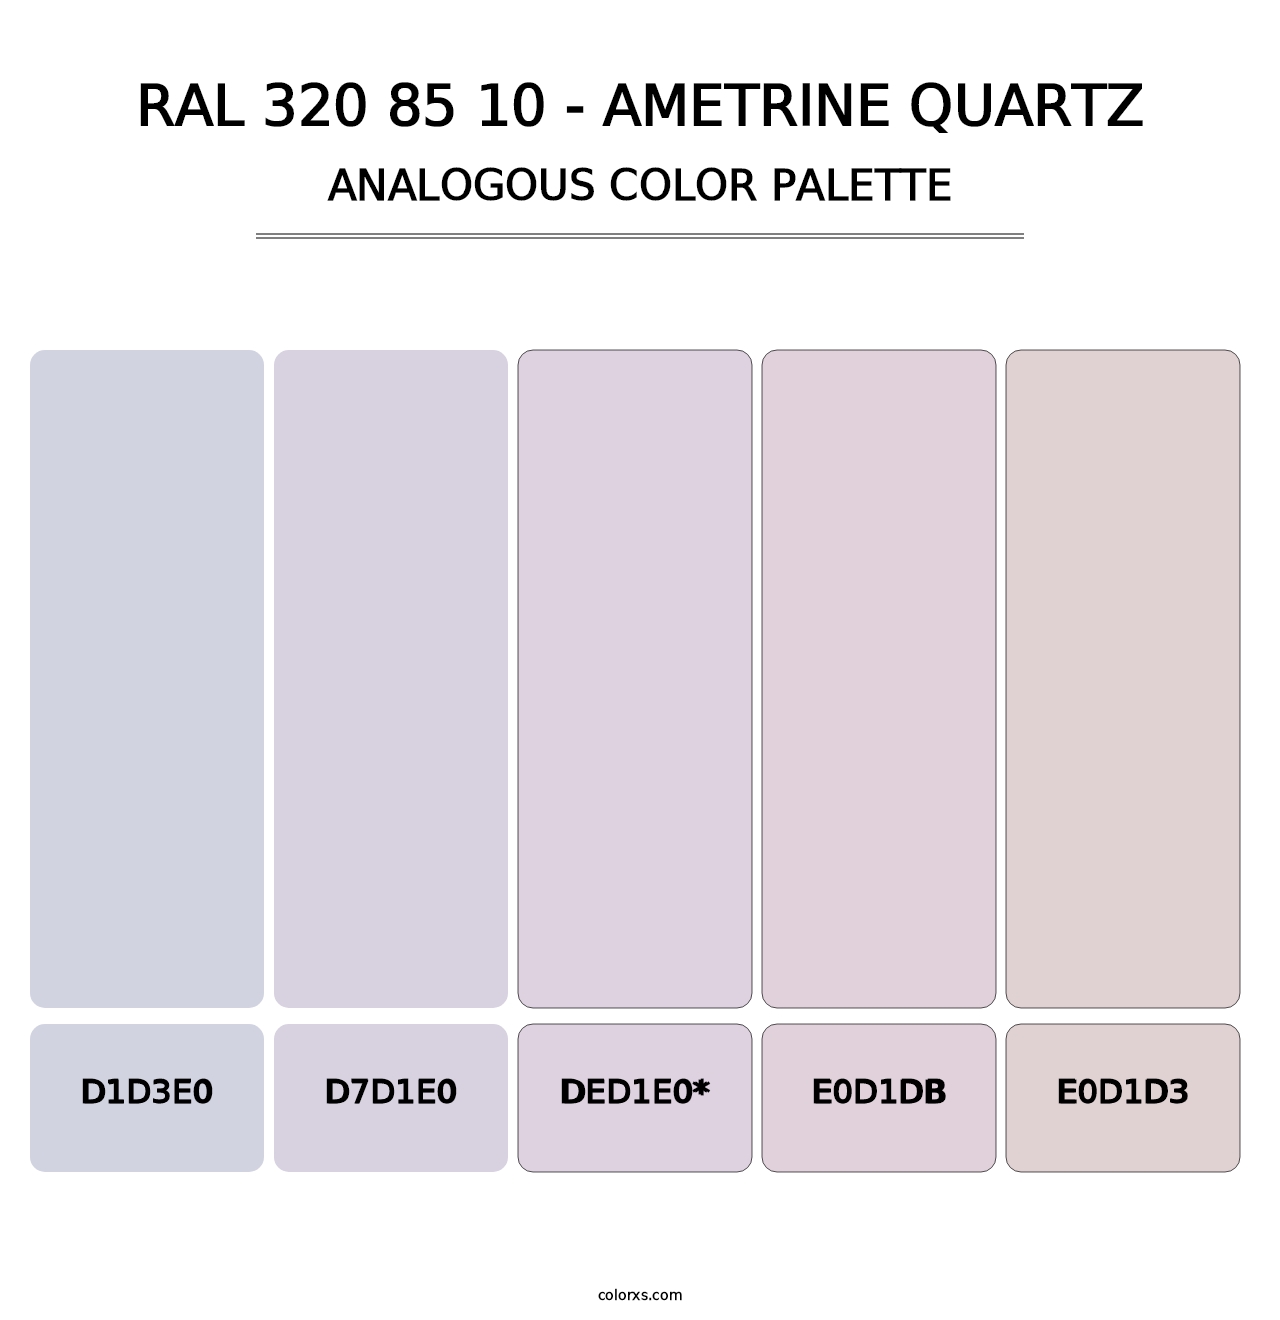 RAL 320 85 10 - Ametrine Quartz - Analogous Color Palette